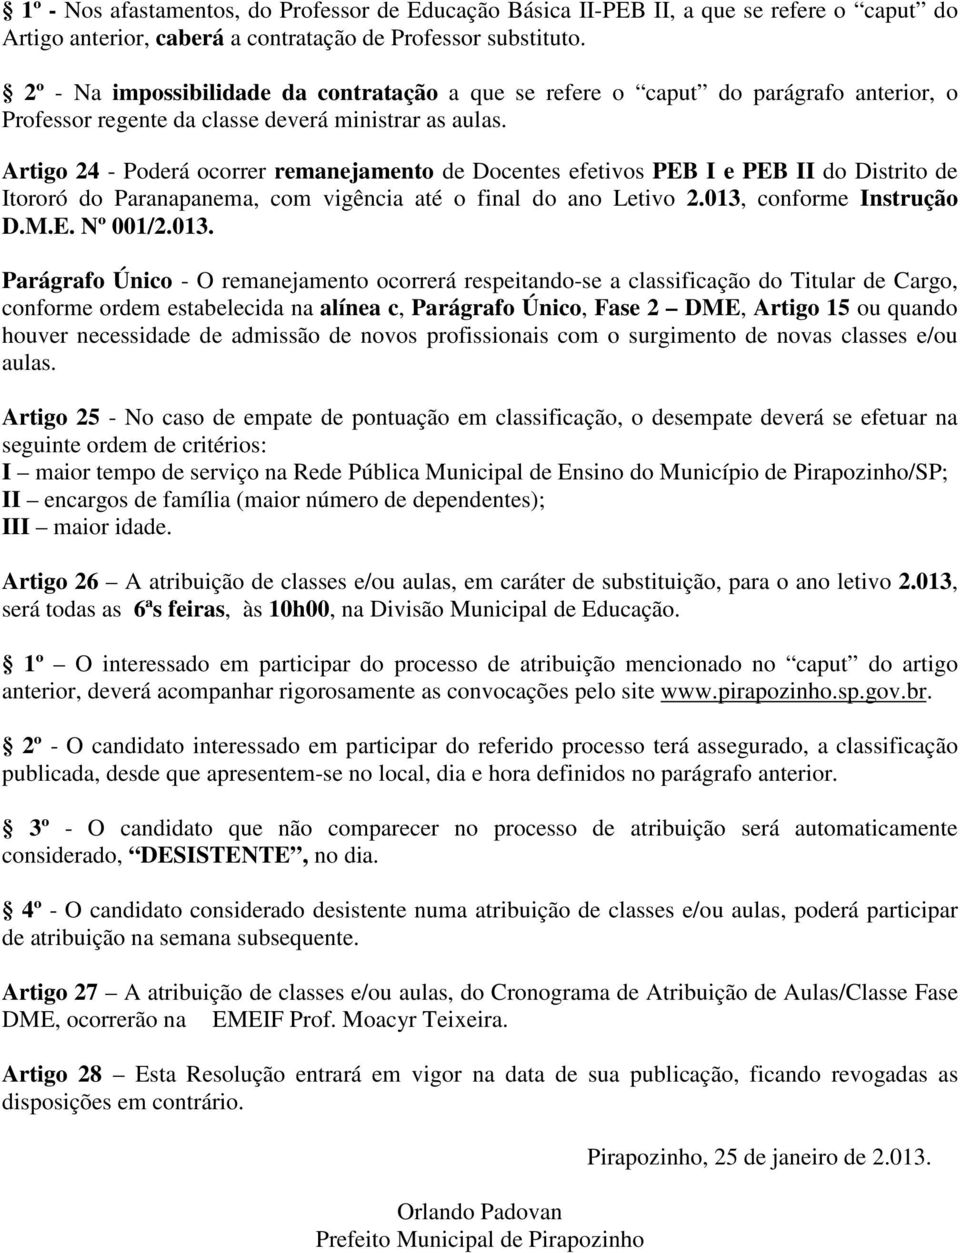 Artigo 24 - Poderá ocorrer remanejamento de Docentes efetivos PEB I e PEB II do Distrito de Itororó do Paranapanema, com vigência até o final do ano Letivo 2.013, conforme Instrução D.M.E. Nº 001/2.